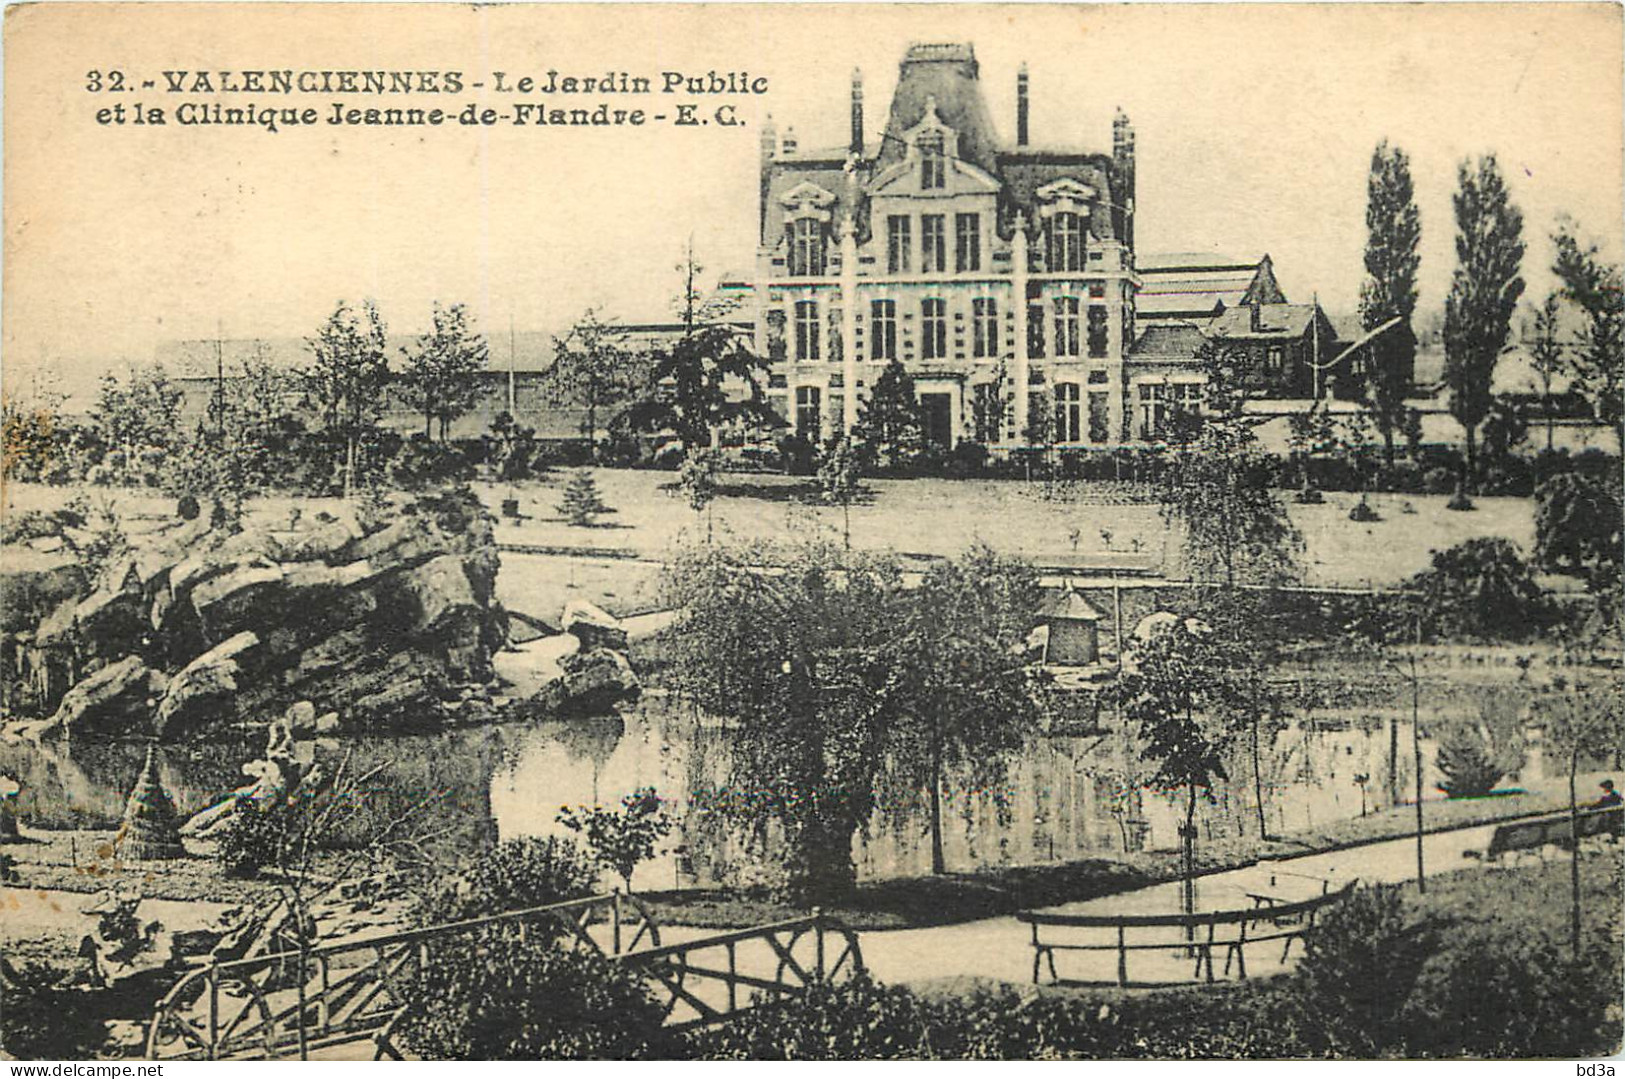  59 VALENCIENNES   Le Jardin Public Et La Clinique JEANNE DE FLANDRE - Valenciennes